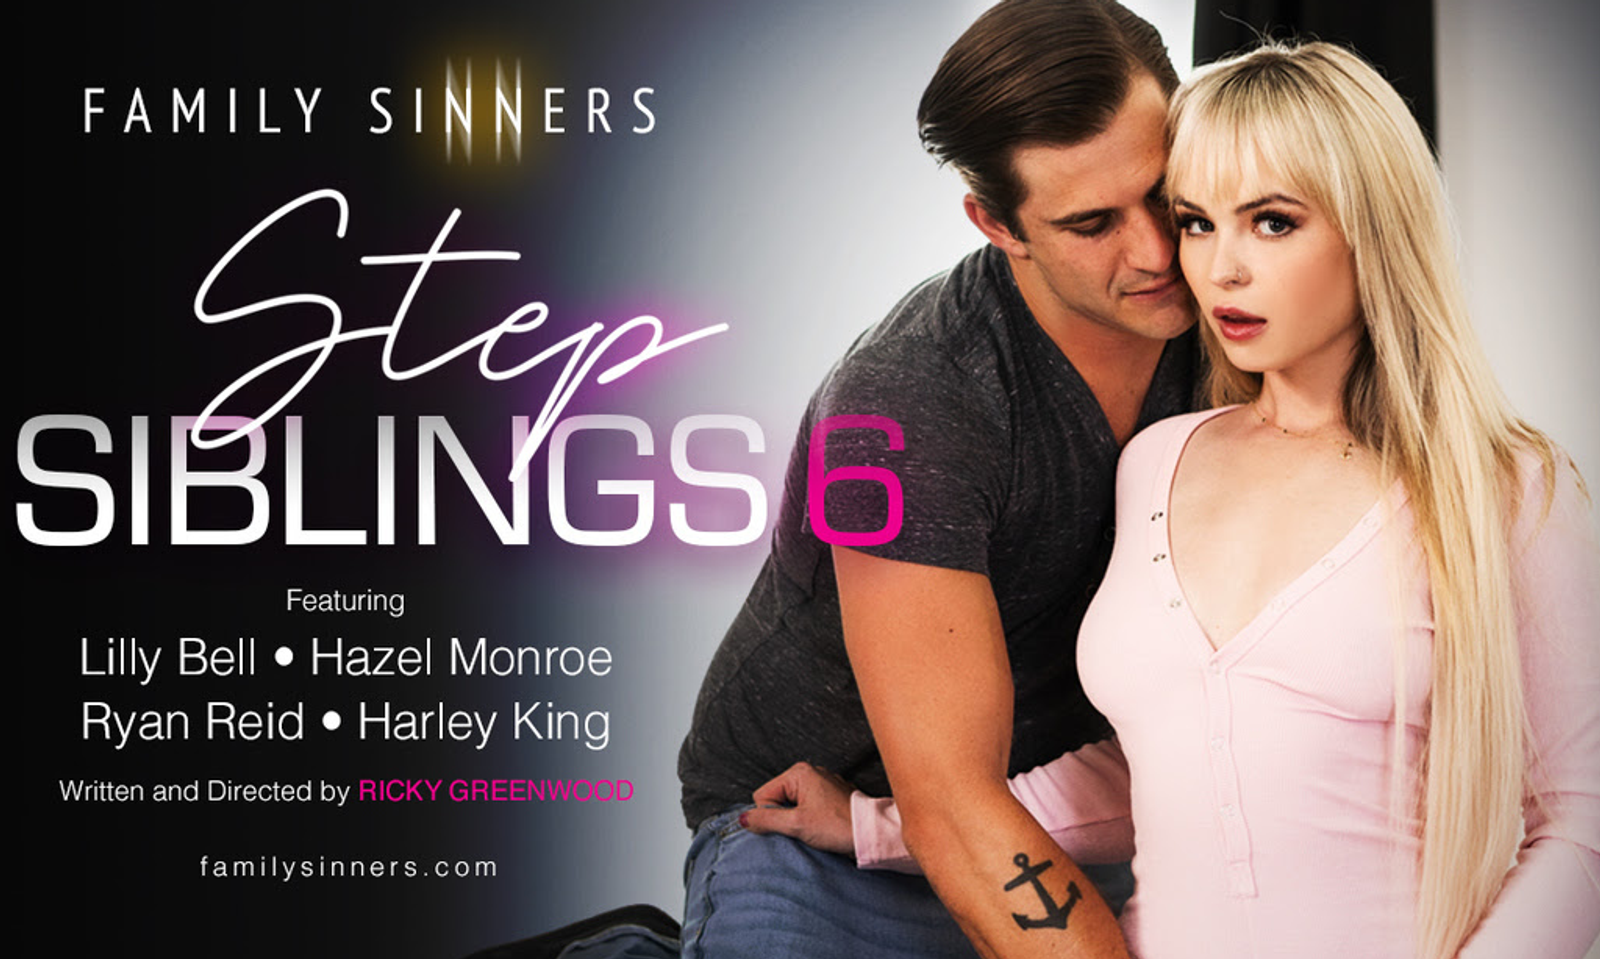 Family Sinners Releases 'Step Siblings 6'